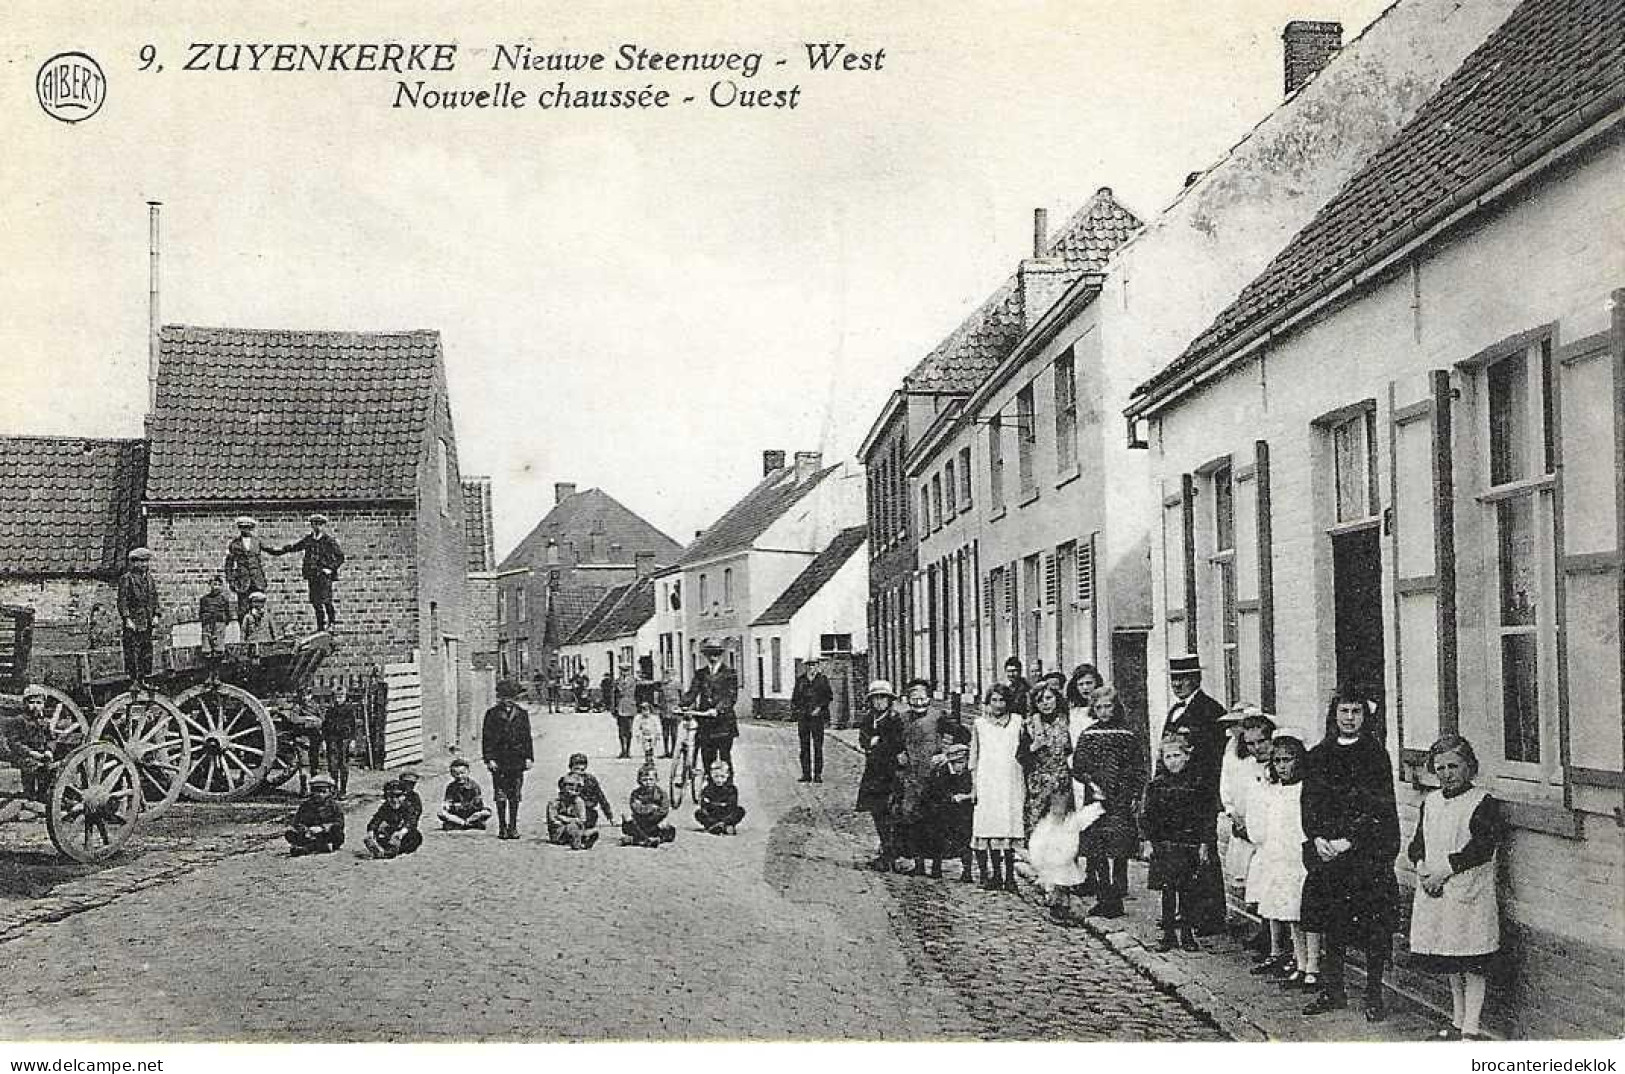 ZUIENKERKE (Zuyenkerke): Nieuwe Steenweg West - Zuienkerke